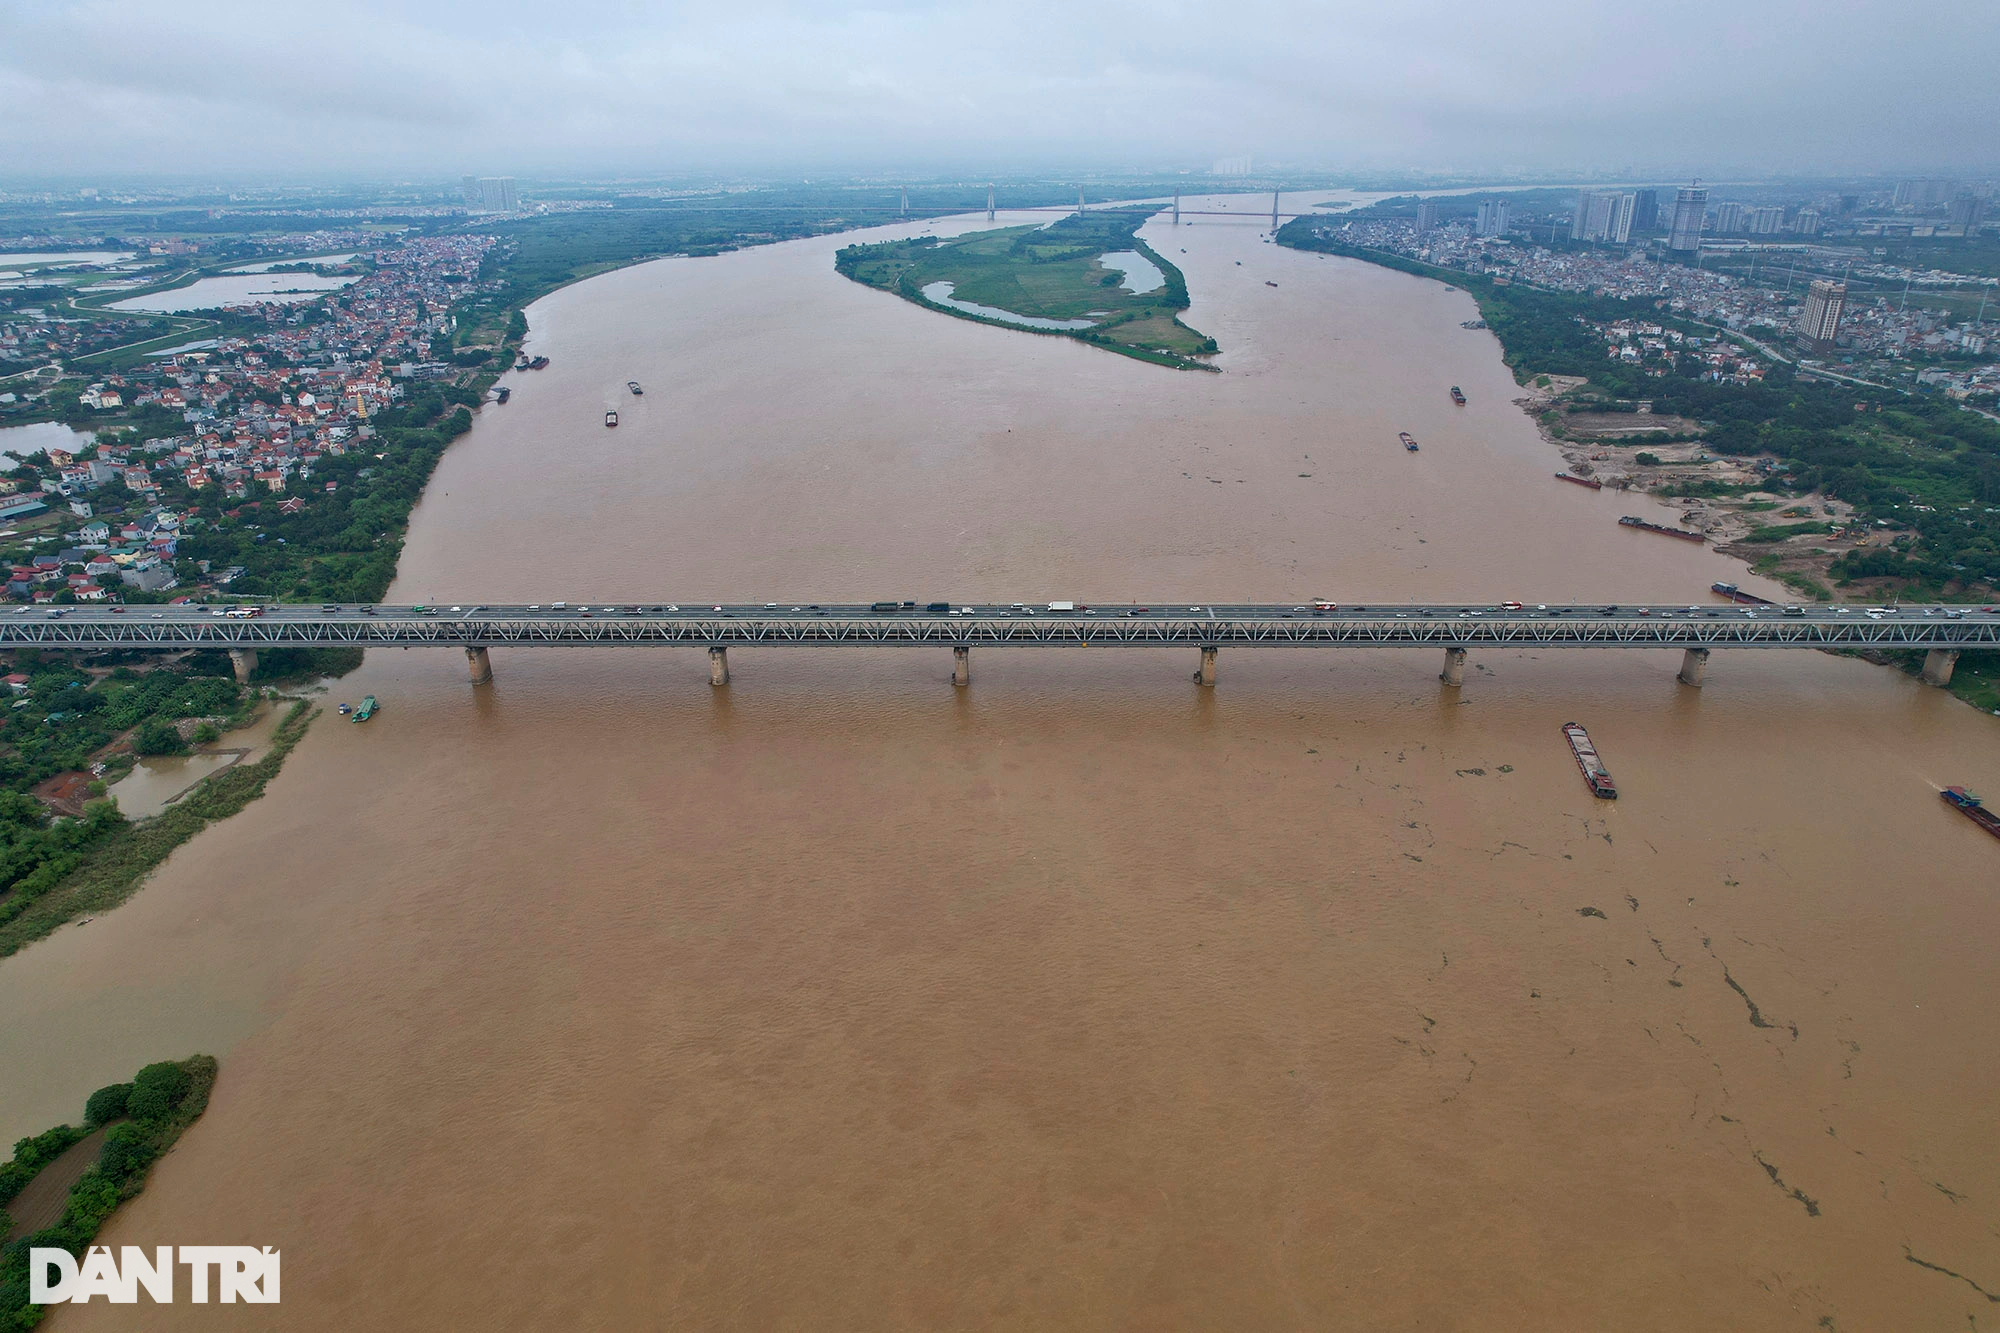 Ngắm 6 cầu qua sông Hồng tại Hà Nội - 10